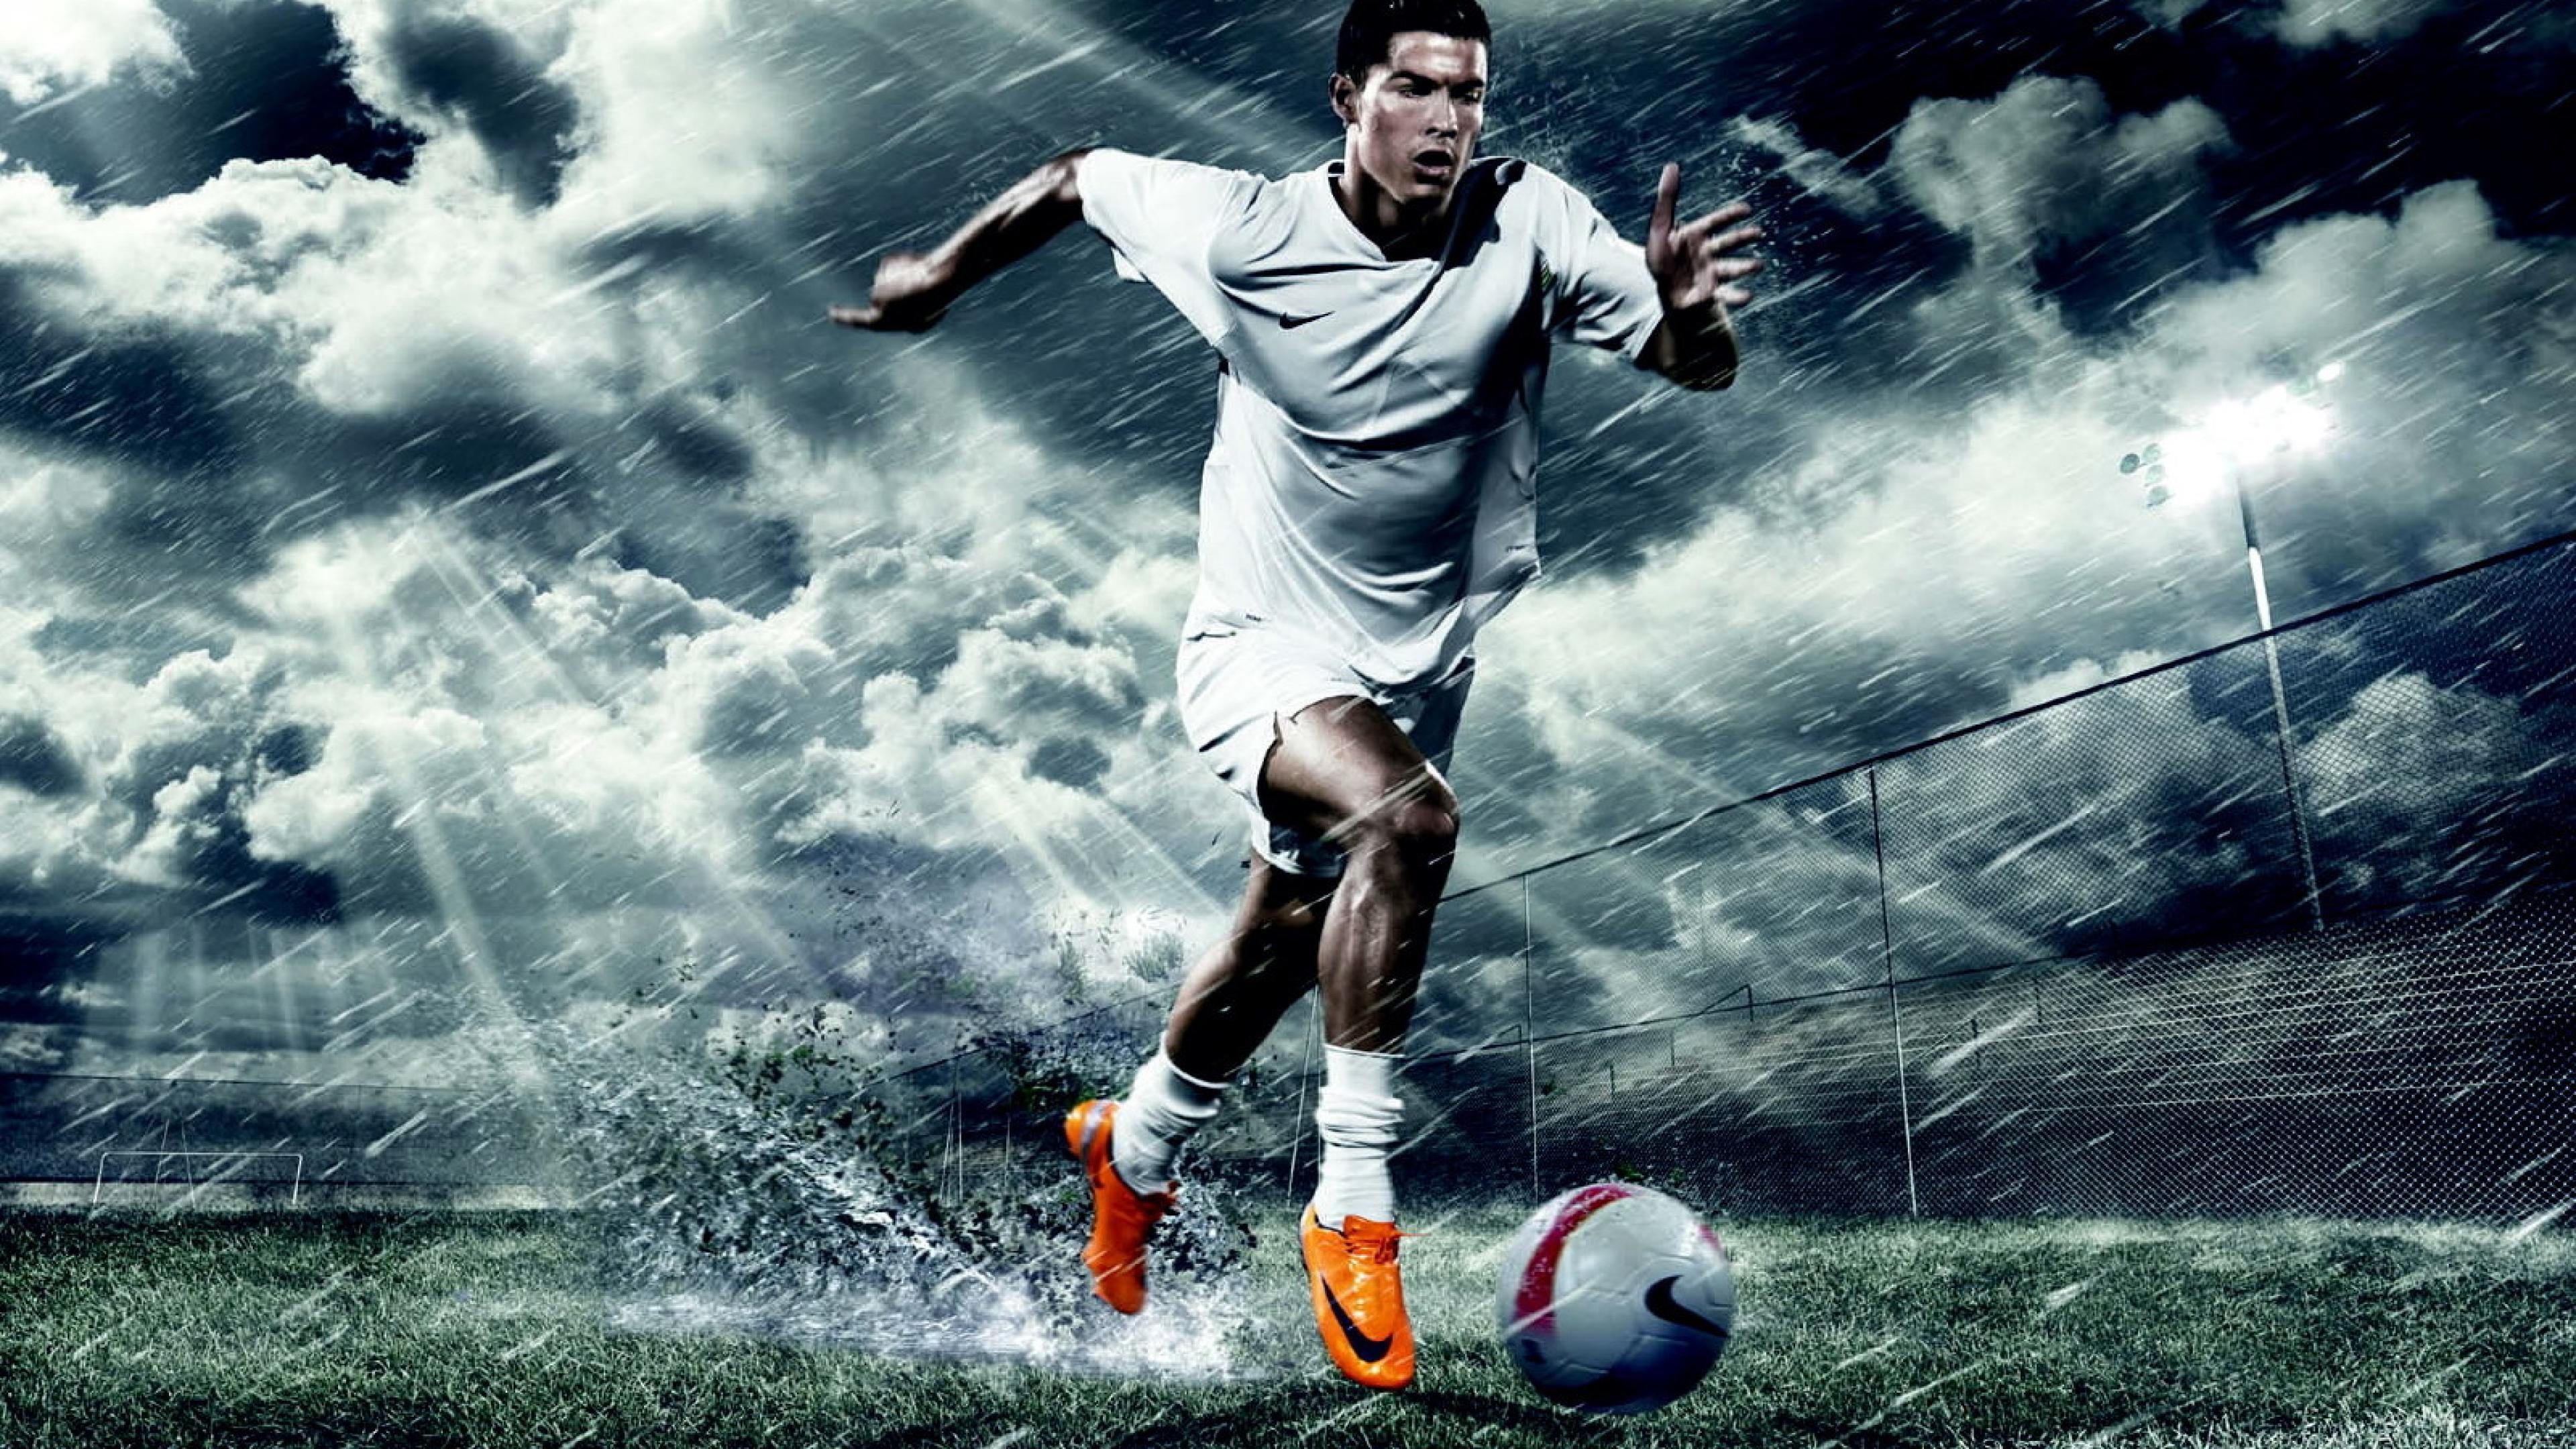 Cristiano Ronaldo Wallpaper Image Photos Pictures